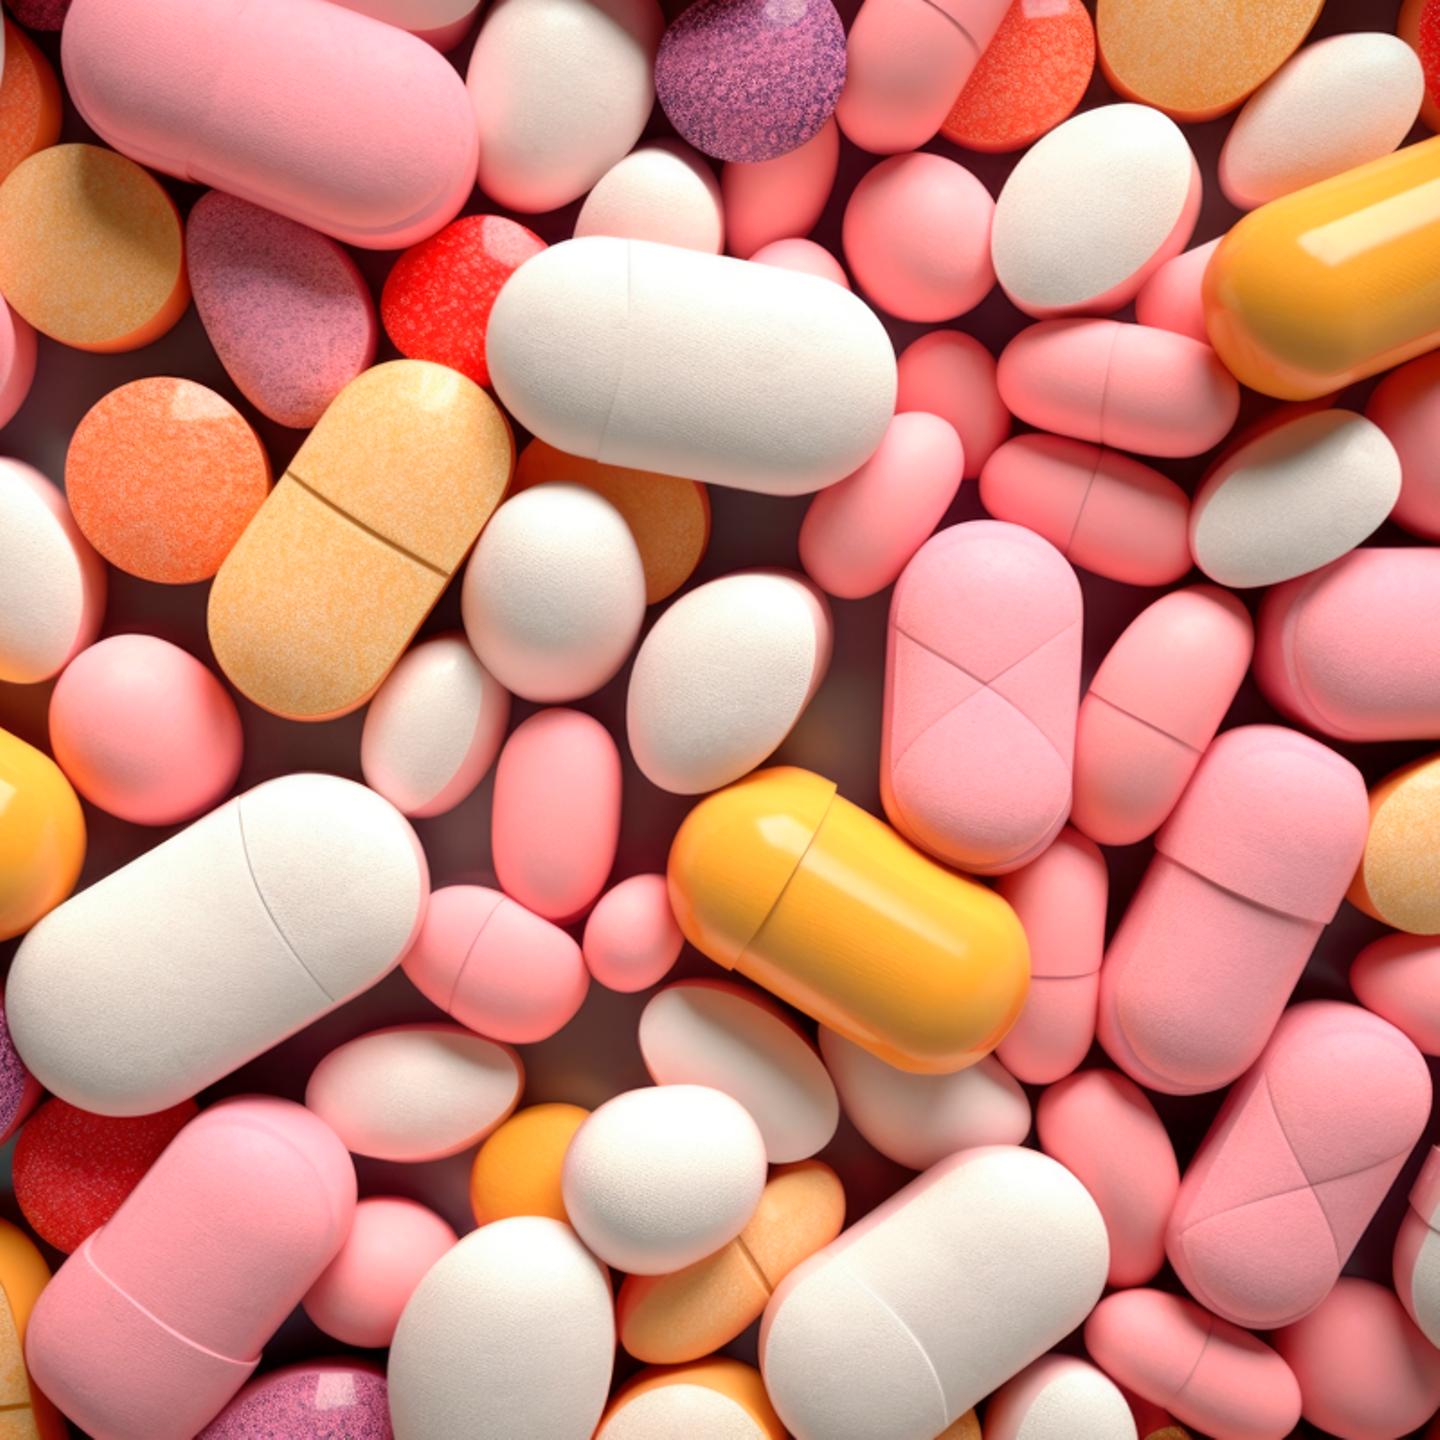 Zu sehen sind viele Tabletten unterschiedlicher Farbe und Beschaffenheit